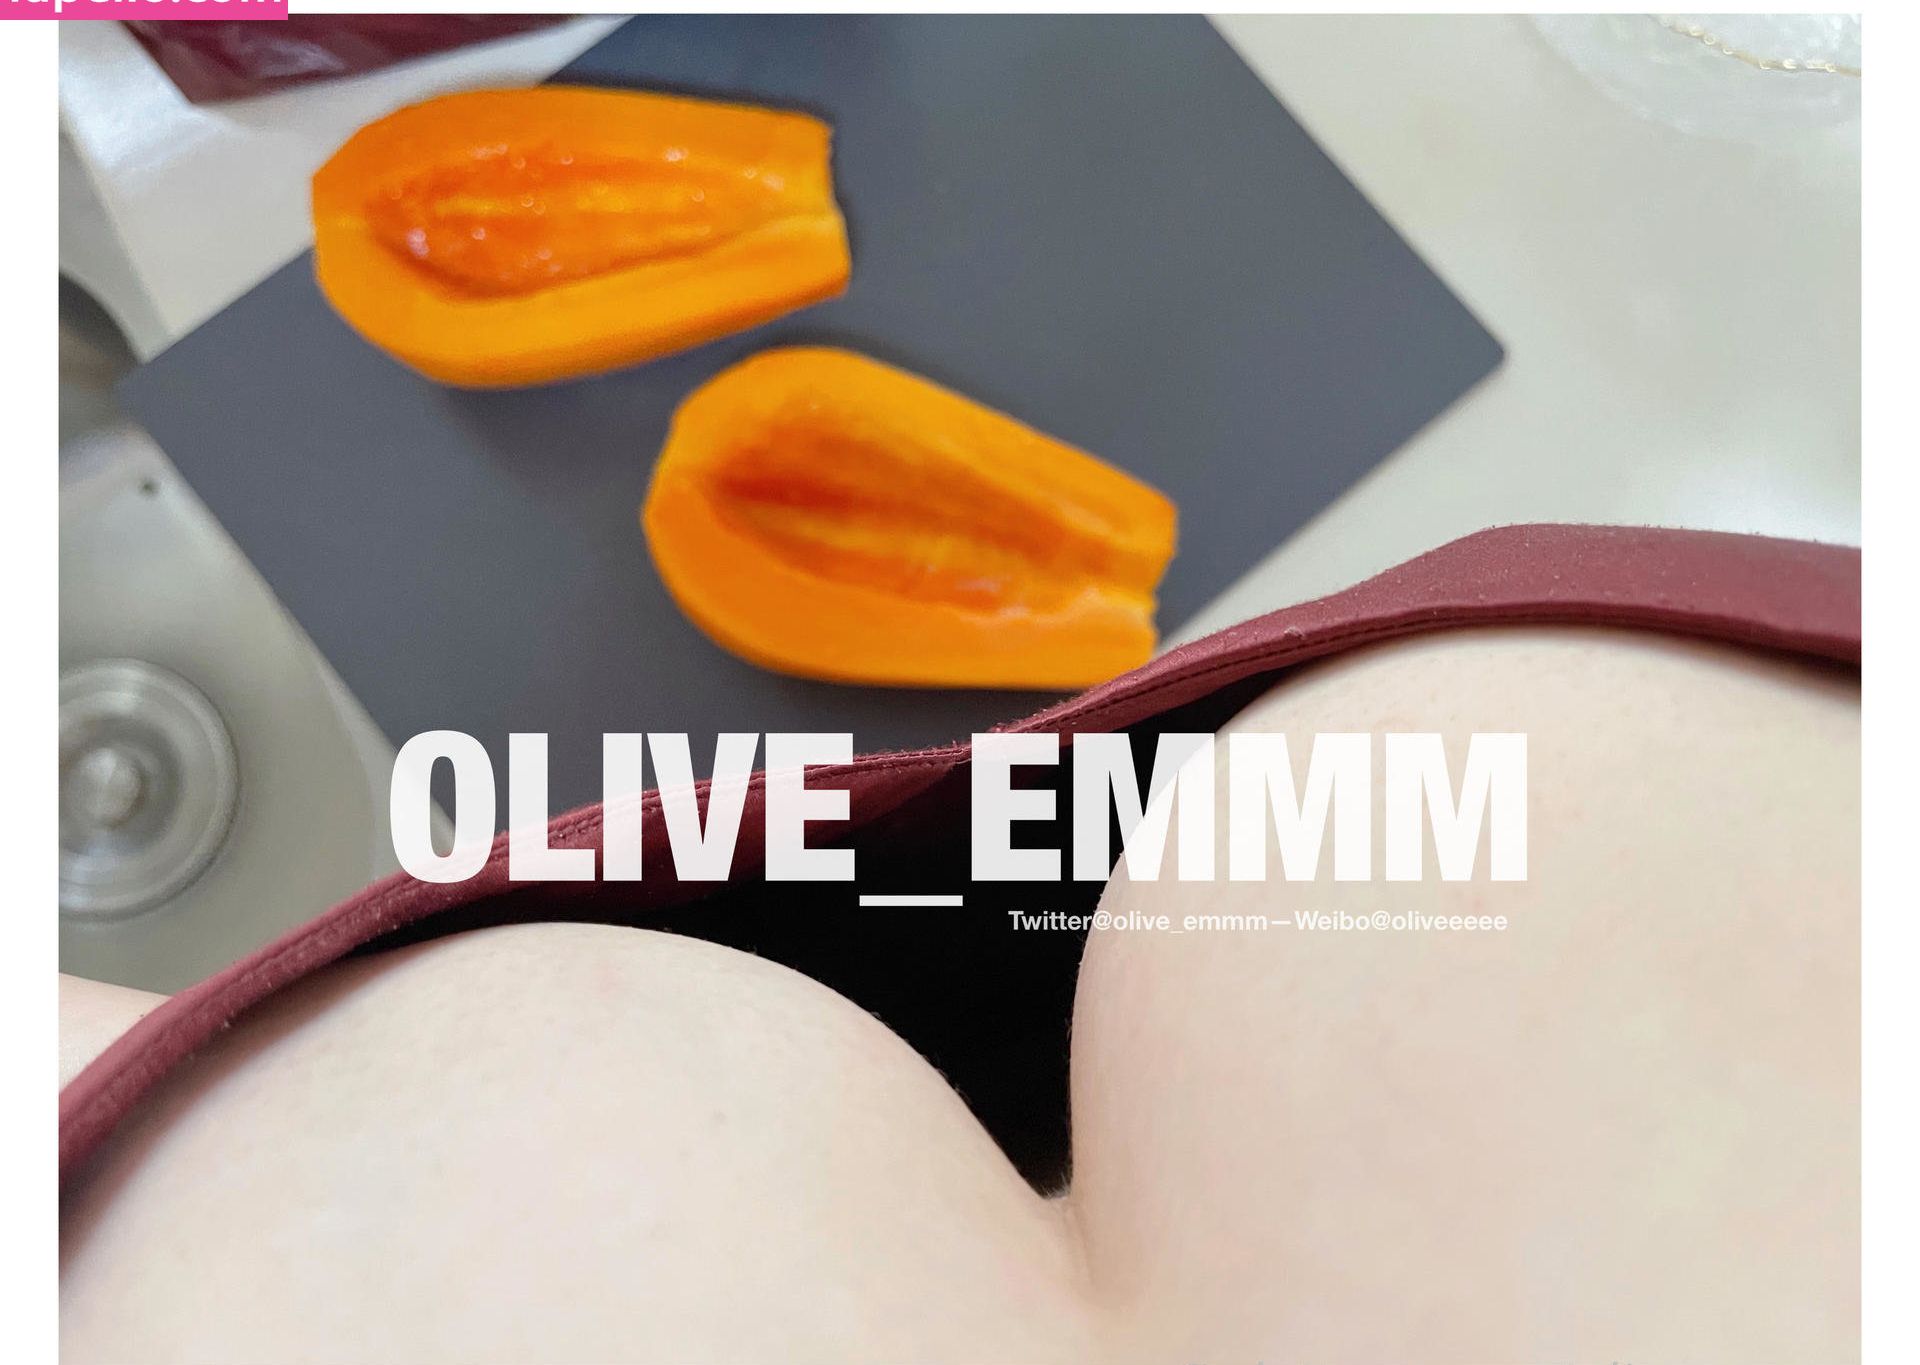 Olive_emmm nue #109699266